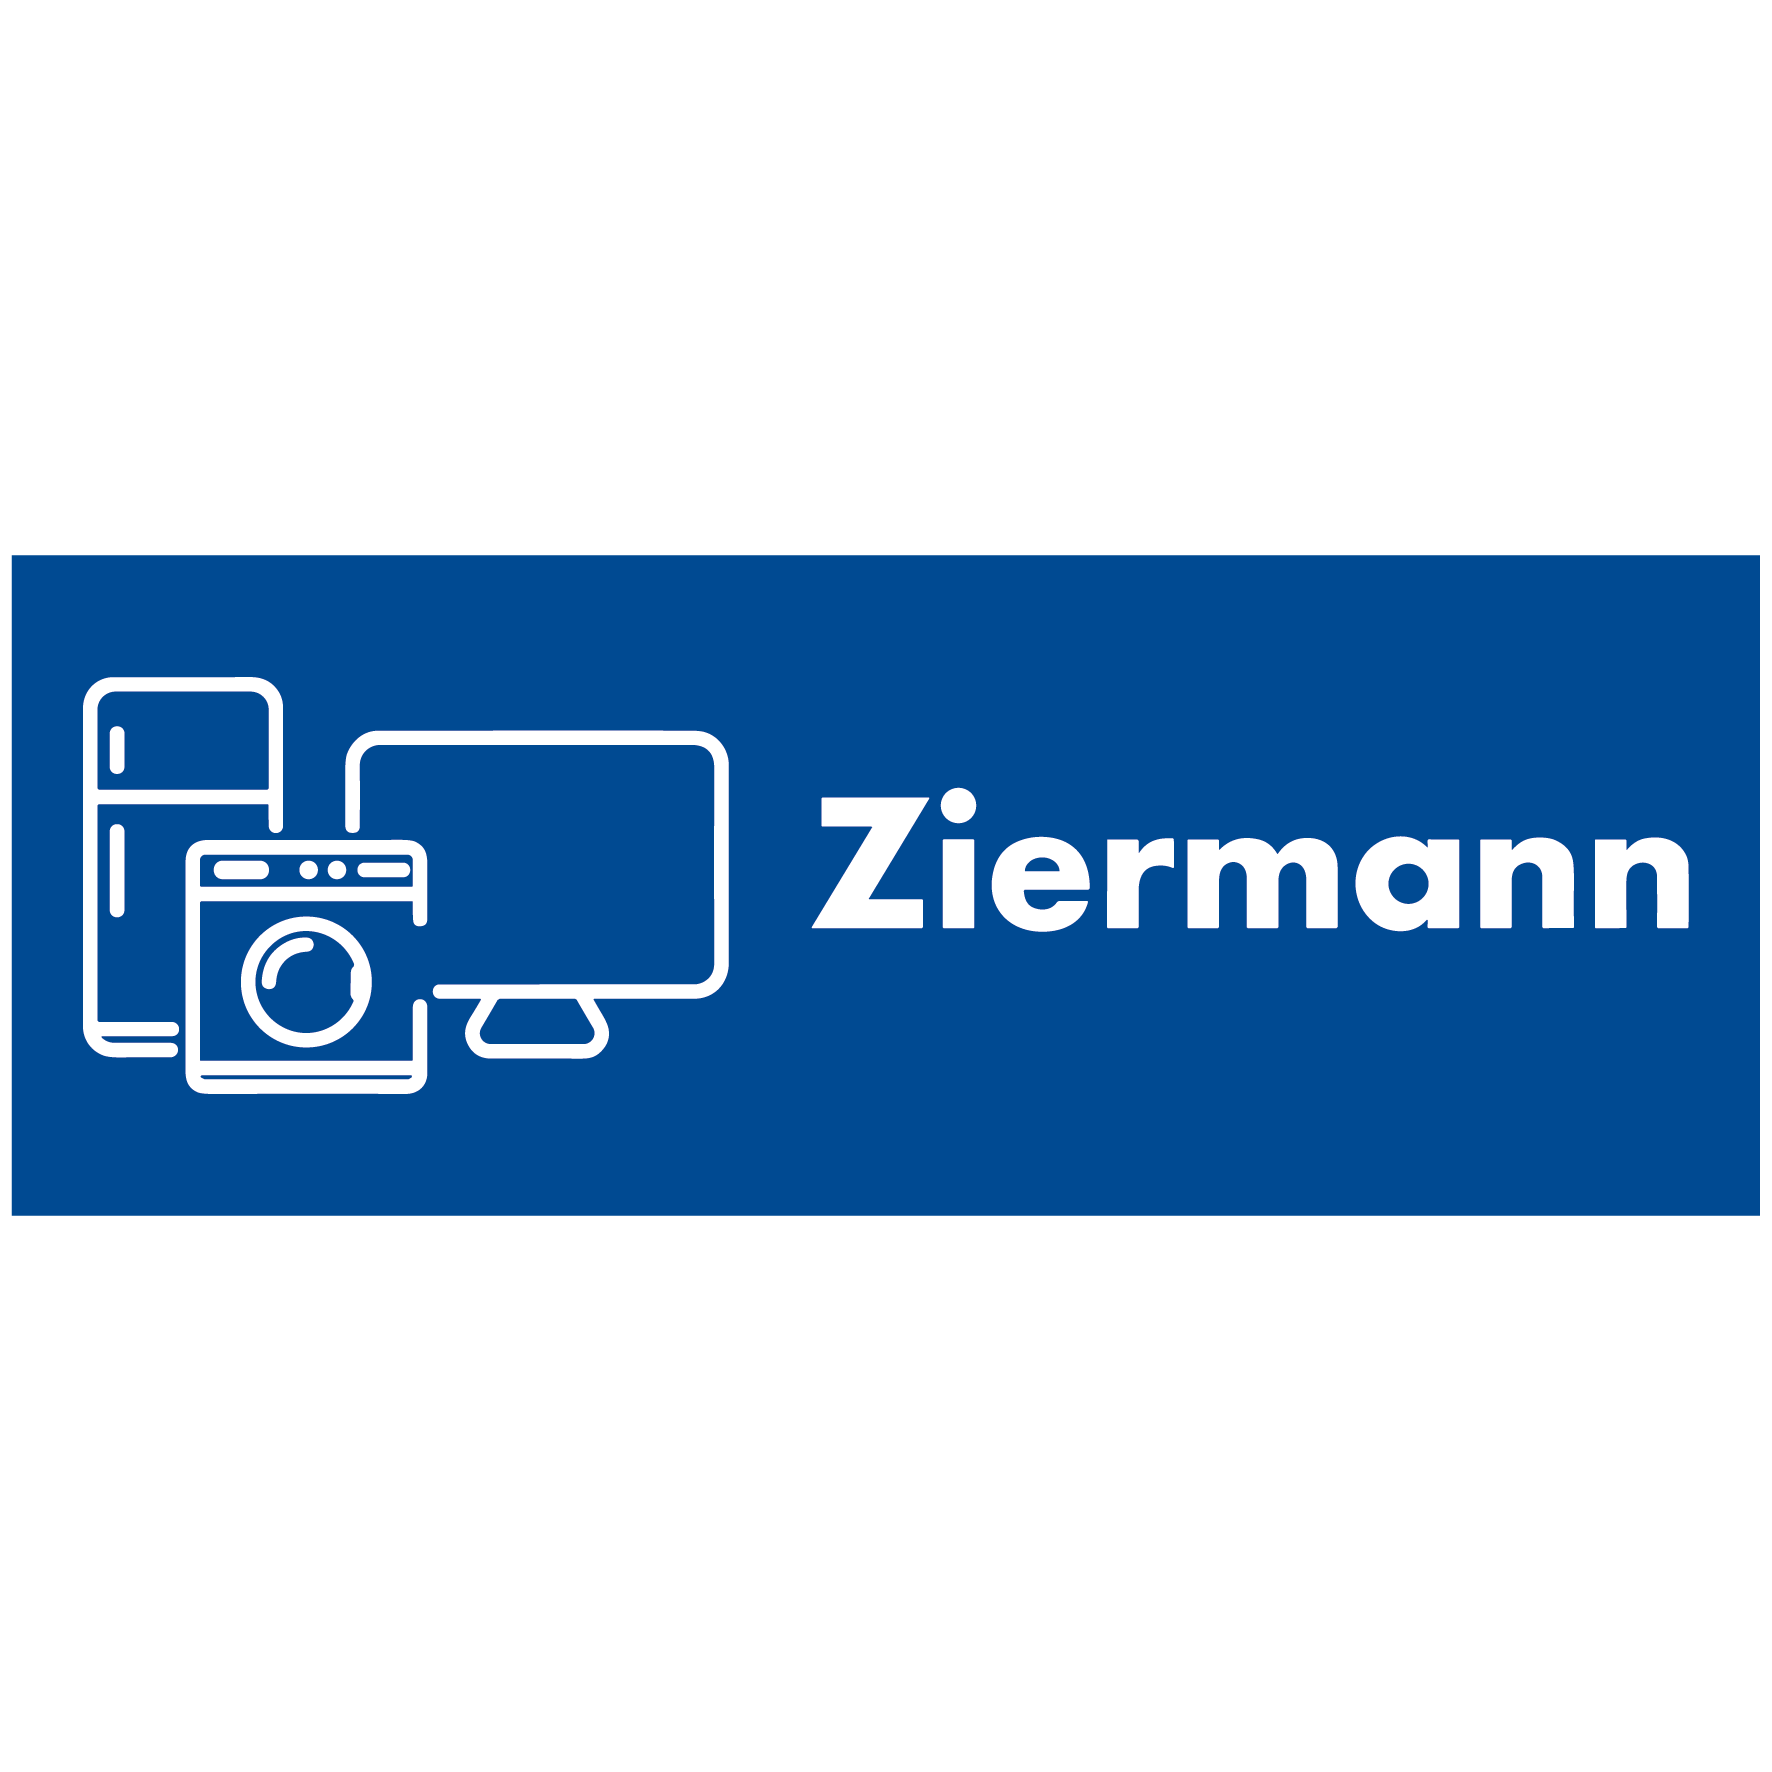 JÜRGEN ZIERMANN TV-AUDIO-VIDEO-HAUSHALT- GERÄTE in Berlin - Logo